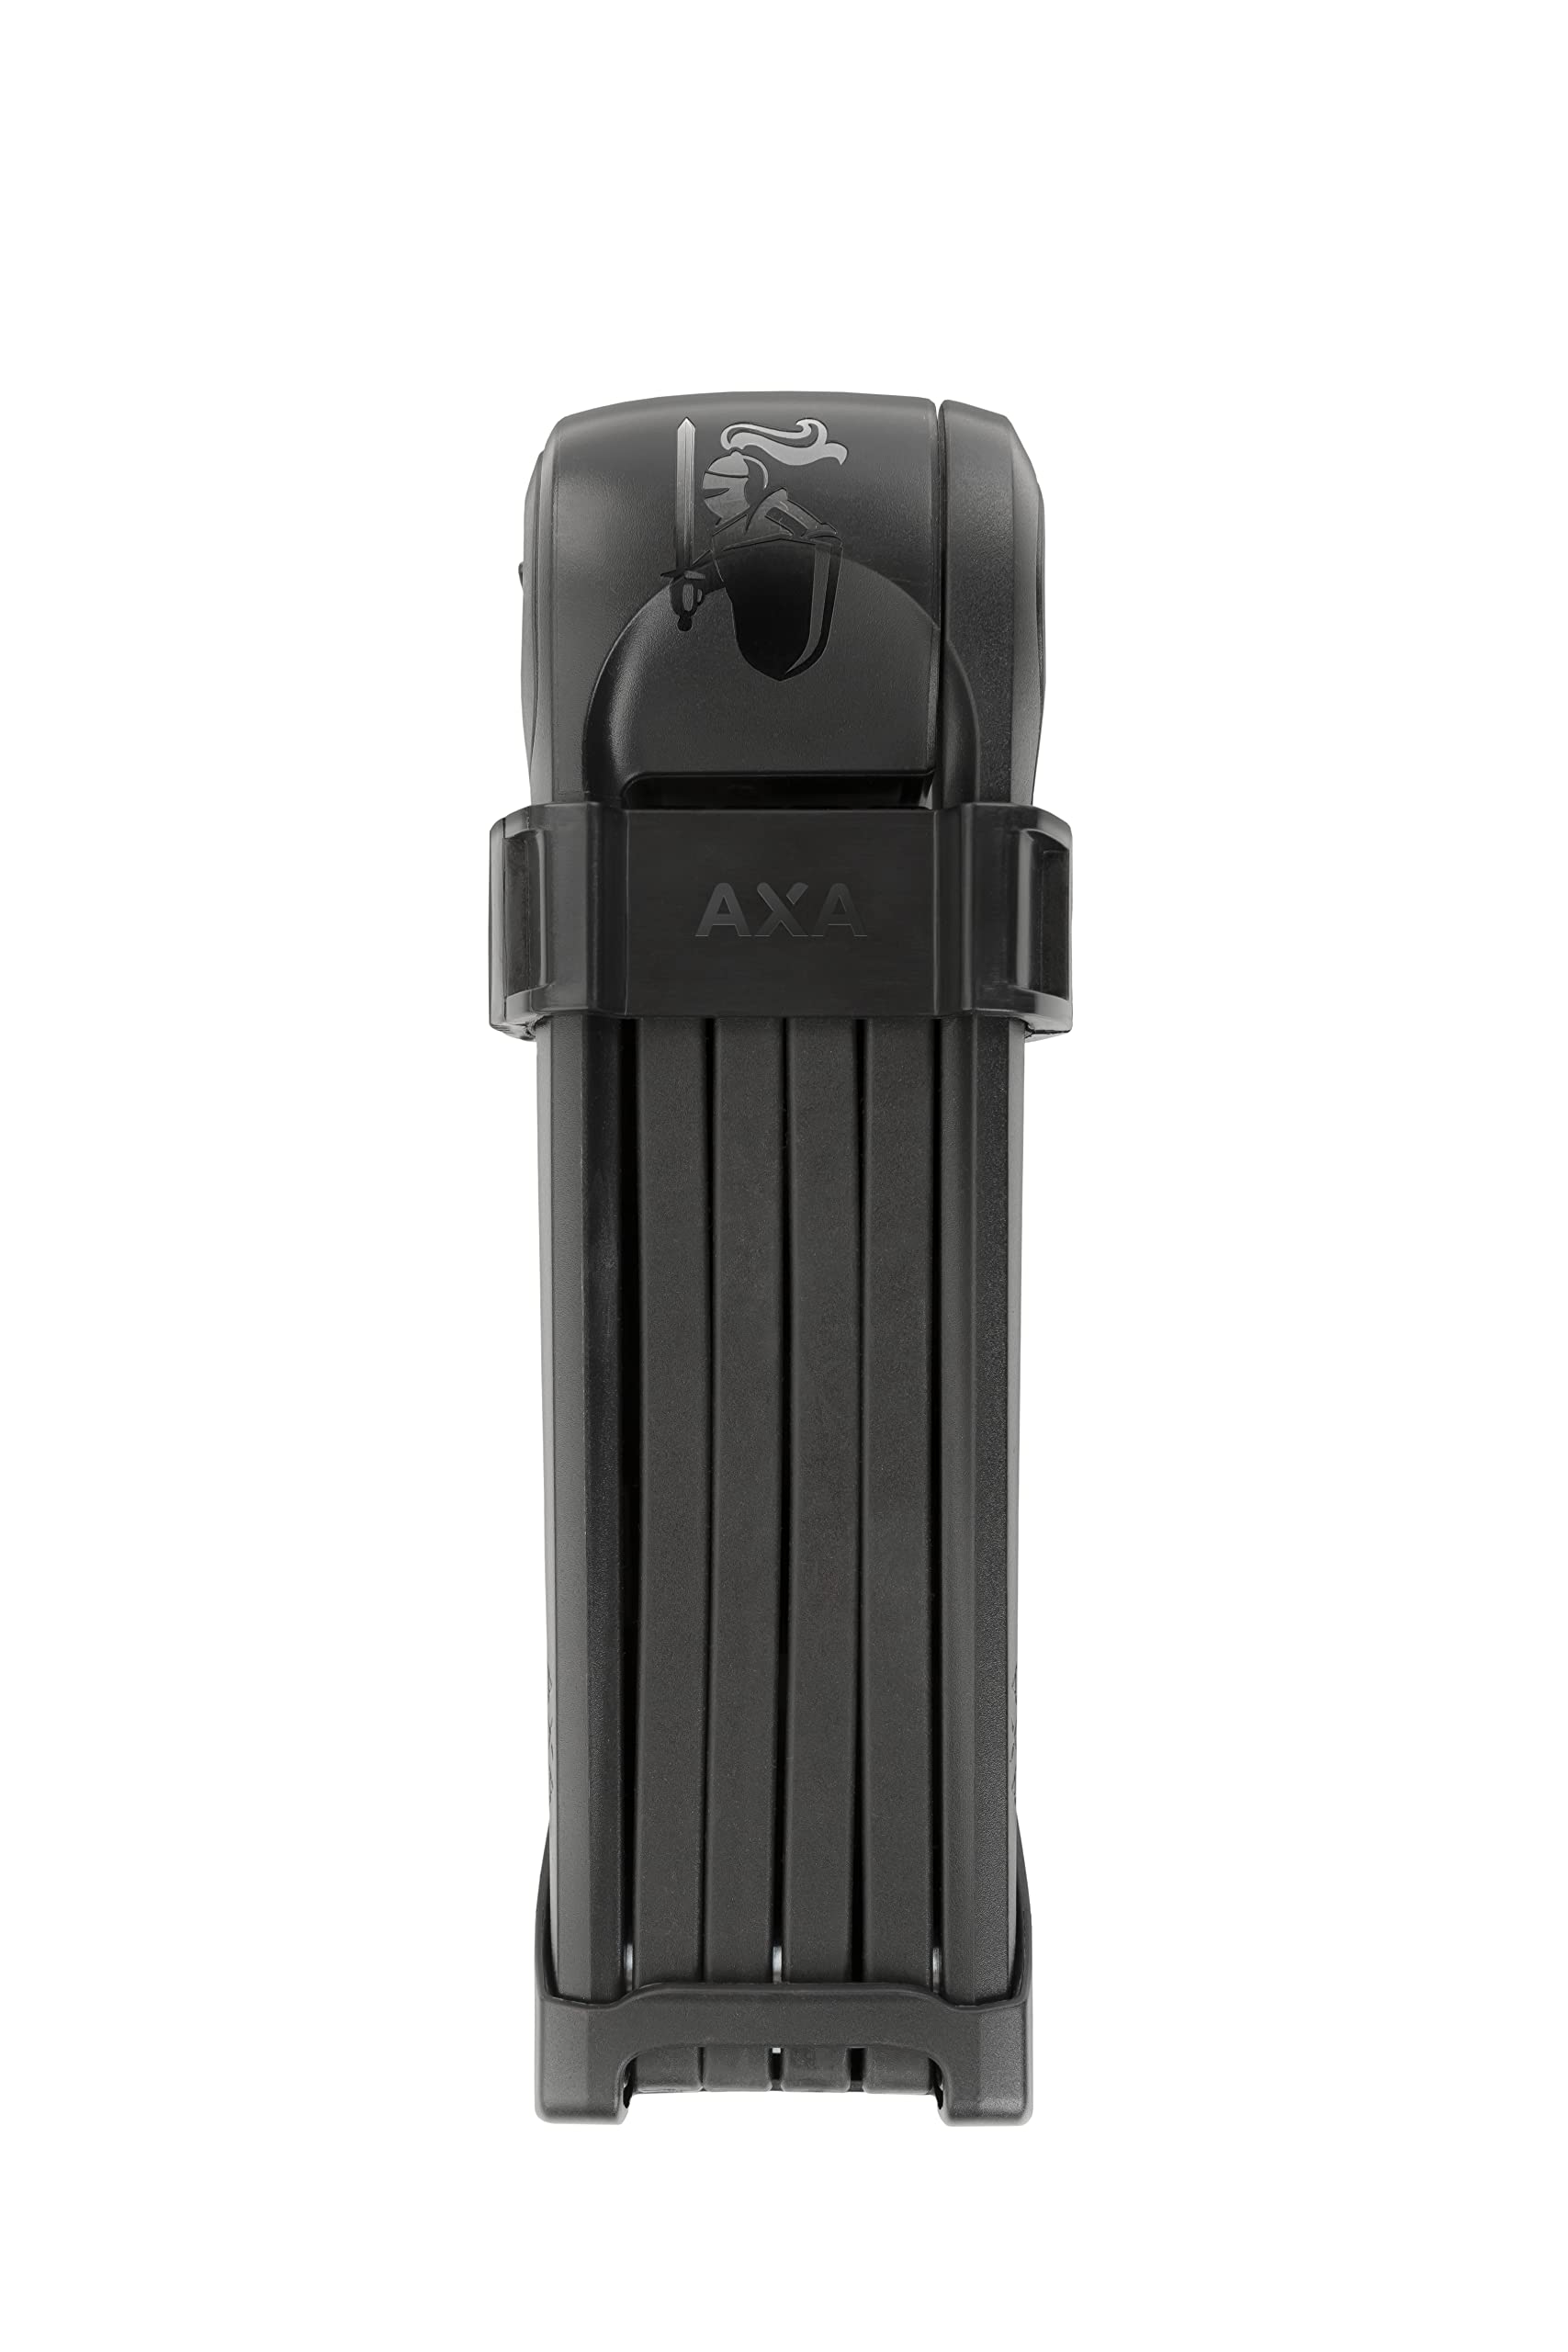 AXA Fold 85 – Faltschloss Fahrrad – Sicherheitsstufe 9 – Passend für alle Rahmen – Länge 85 cm – Abdeckkappe gegen Schmutz im Zylinder – Mit 2 Schlüsseln